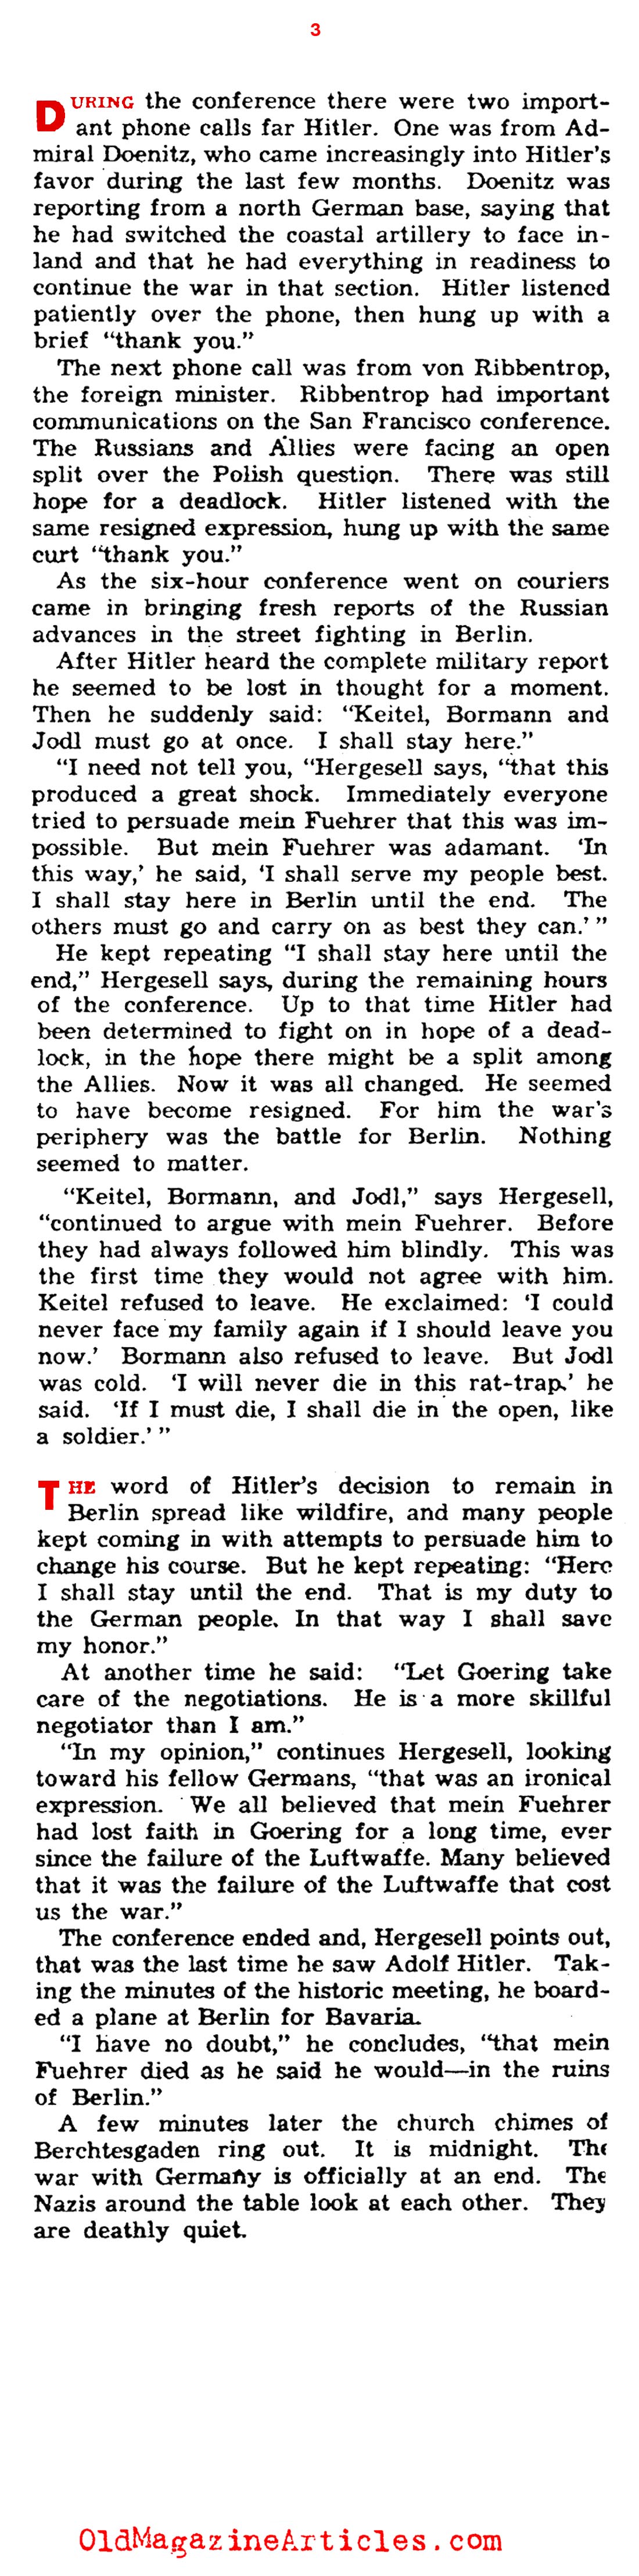 Hitler's Last Days in Power (Yank Magazine, 1945)